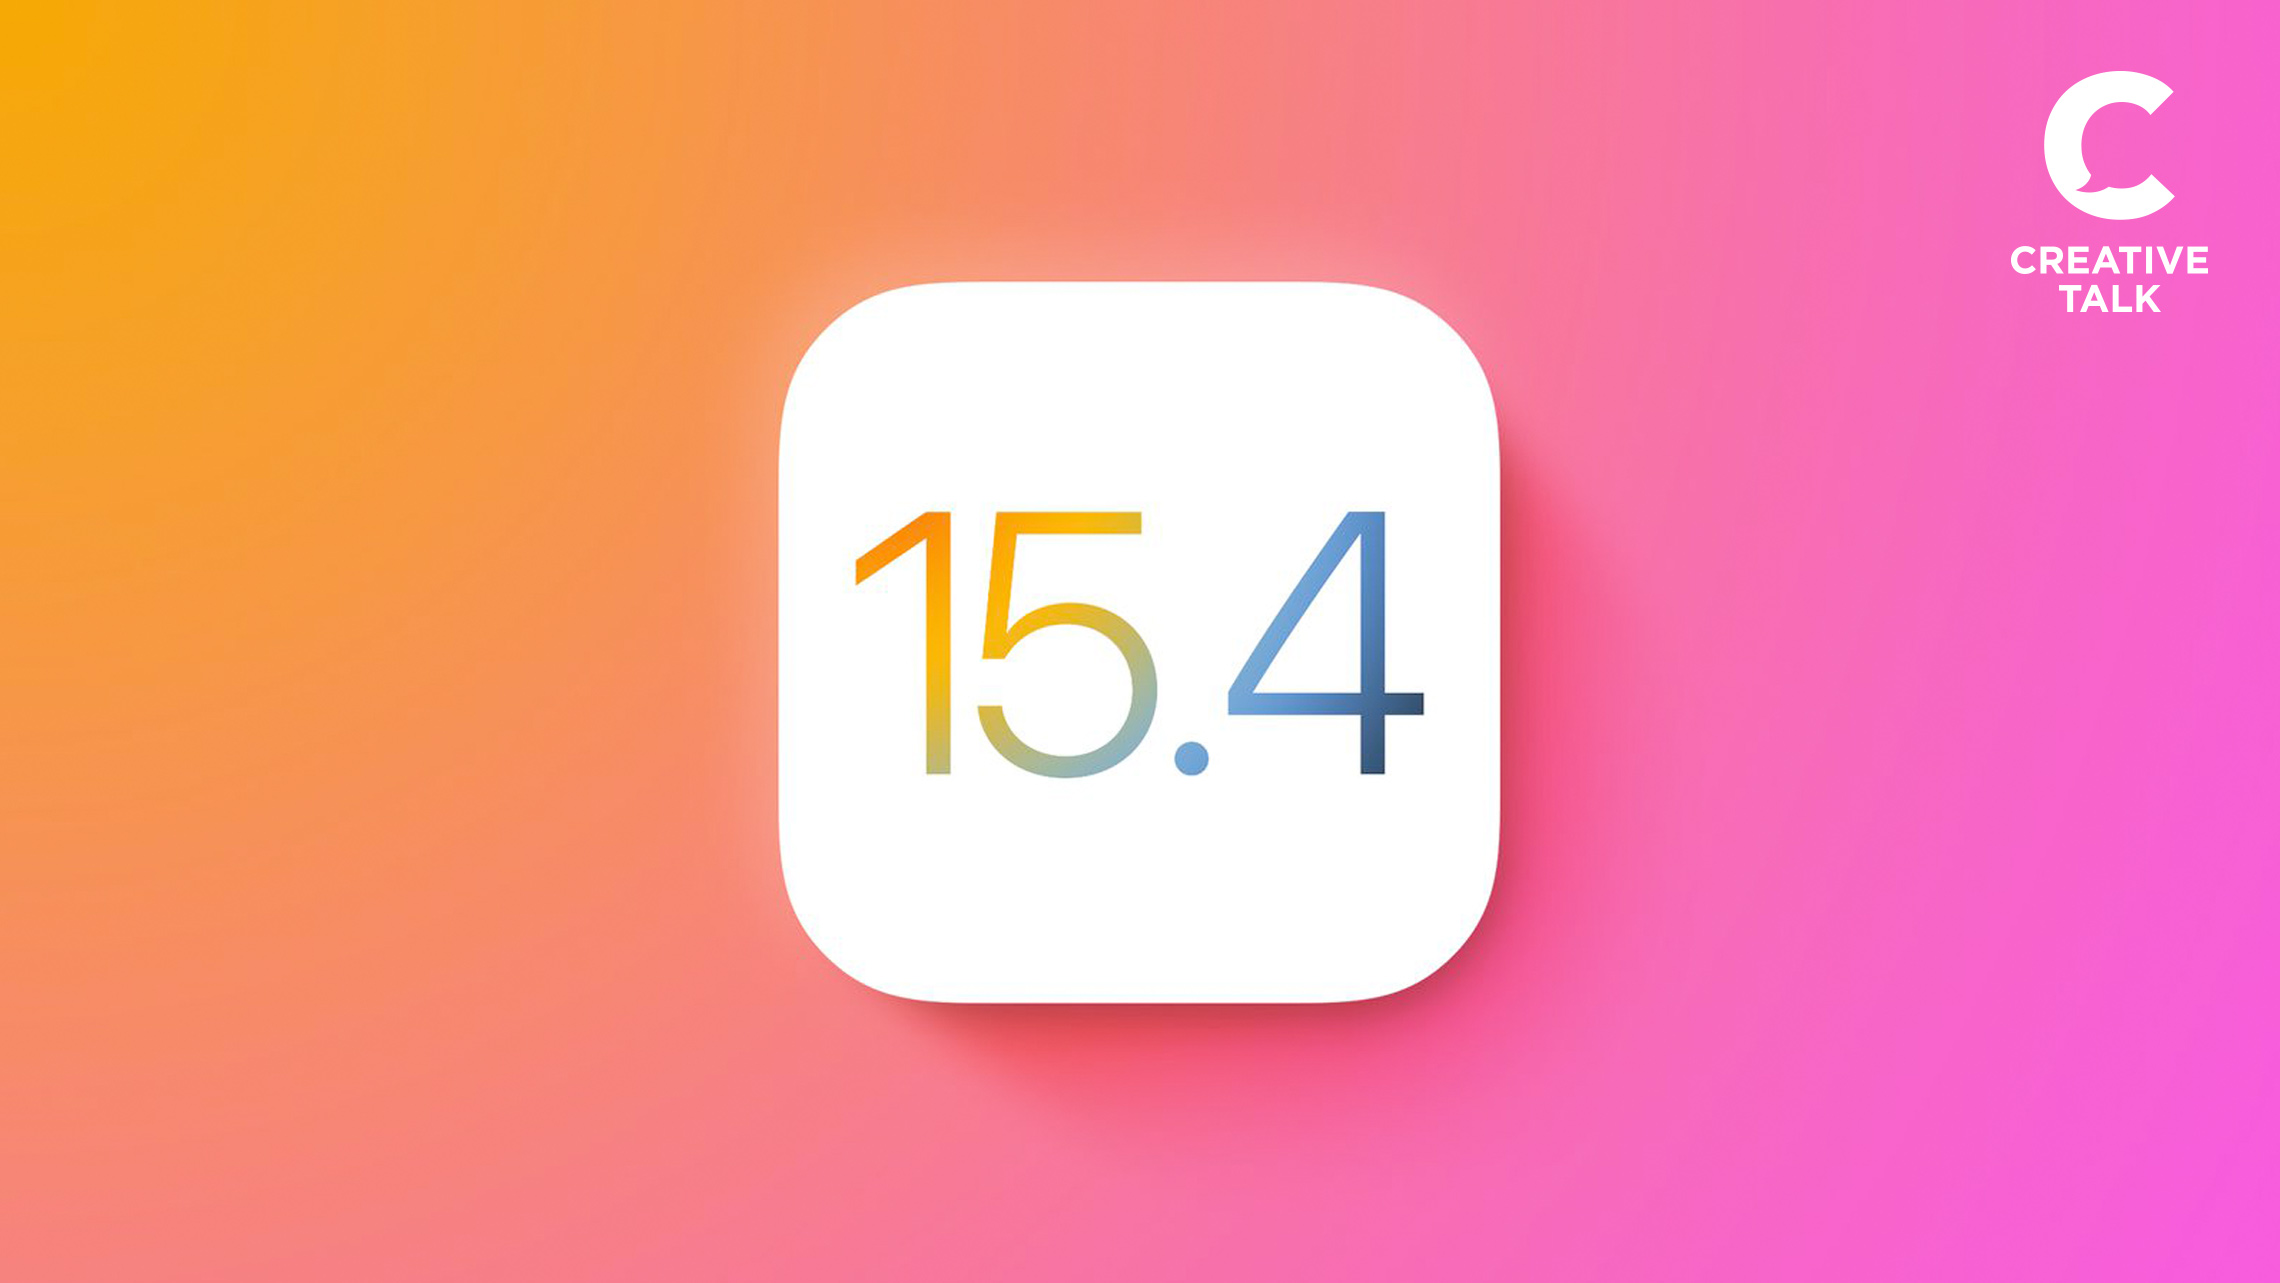 iOS 15.4 มีอะไรใหม่ให้เราได้เล่นบ้าง